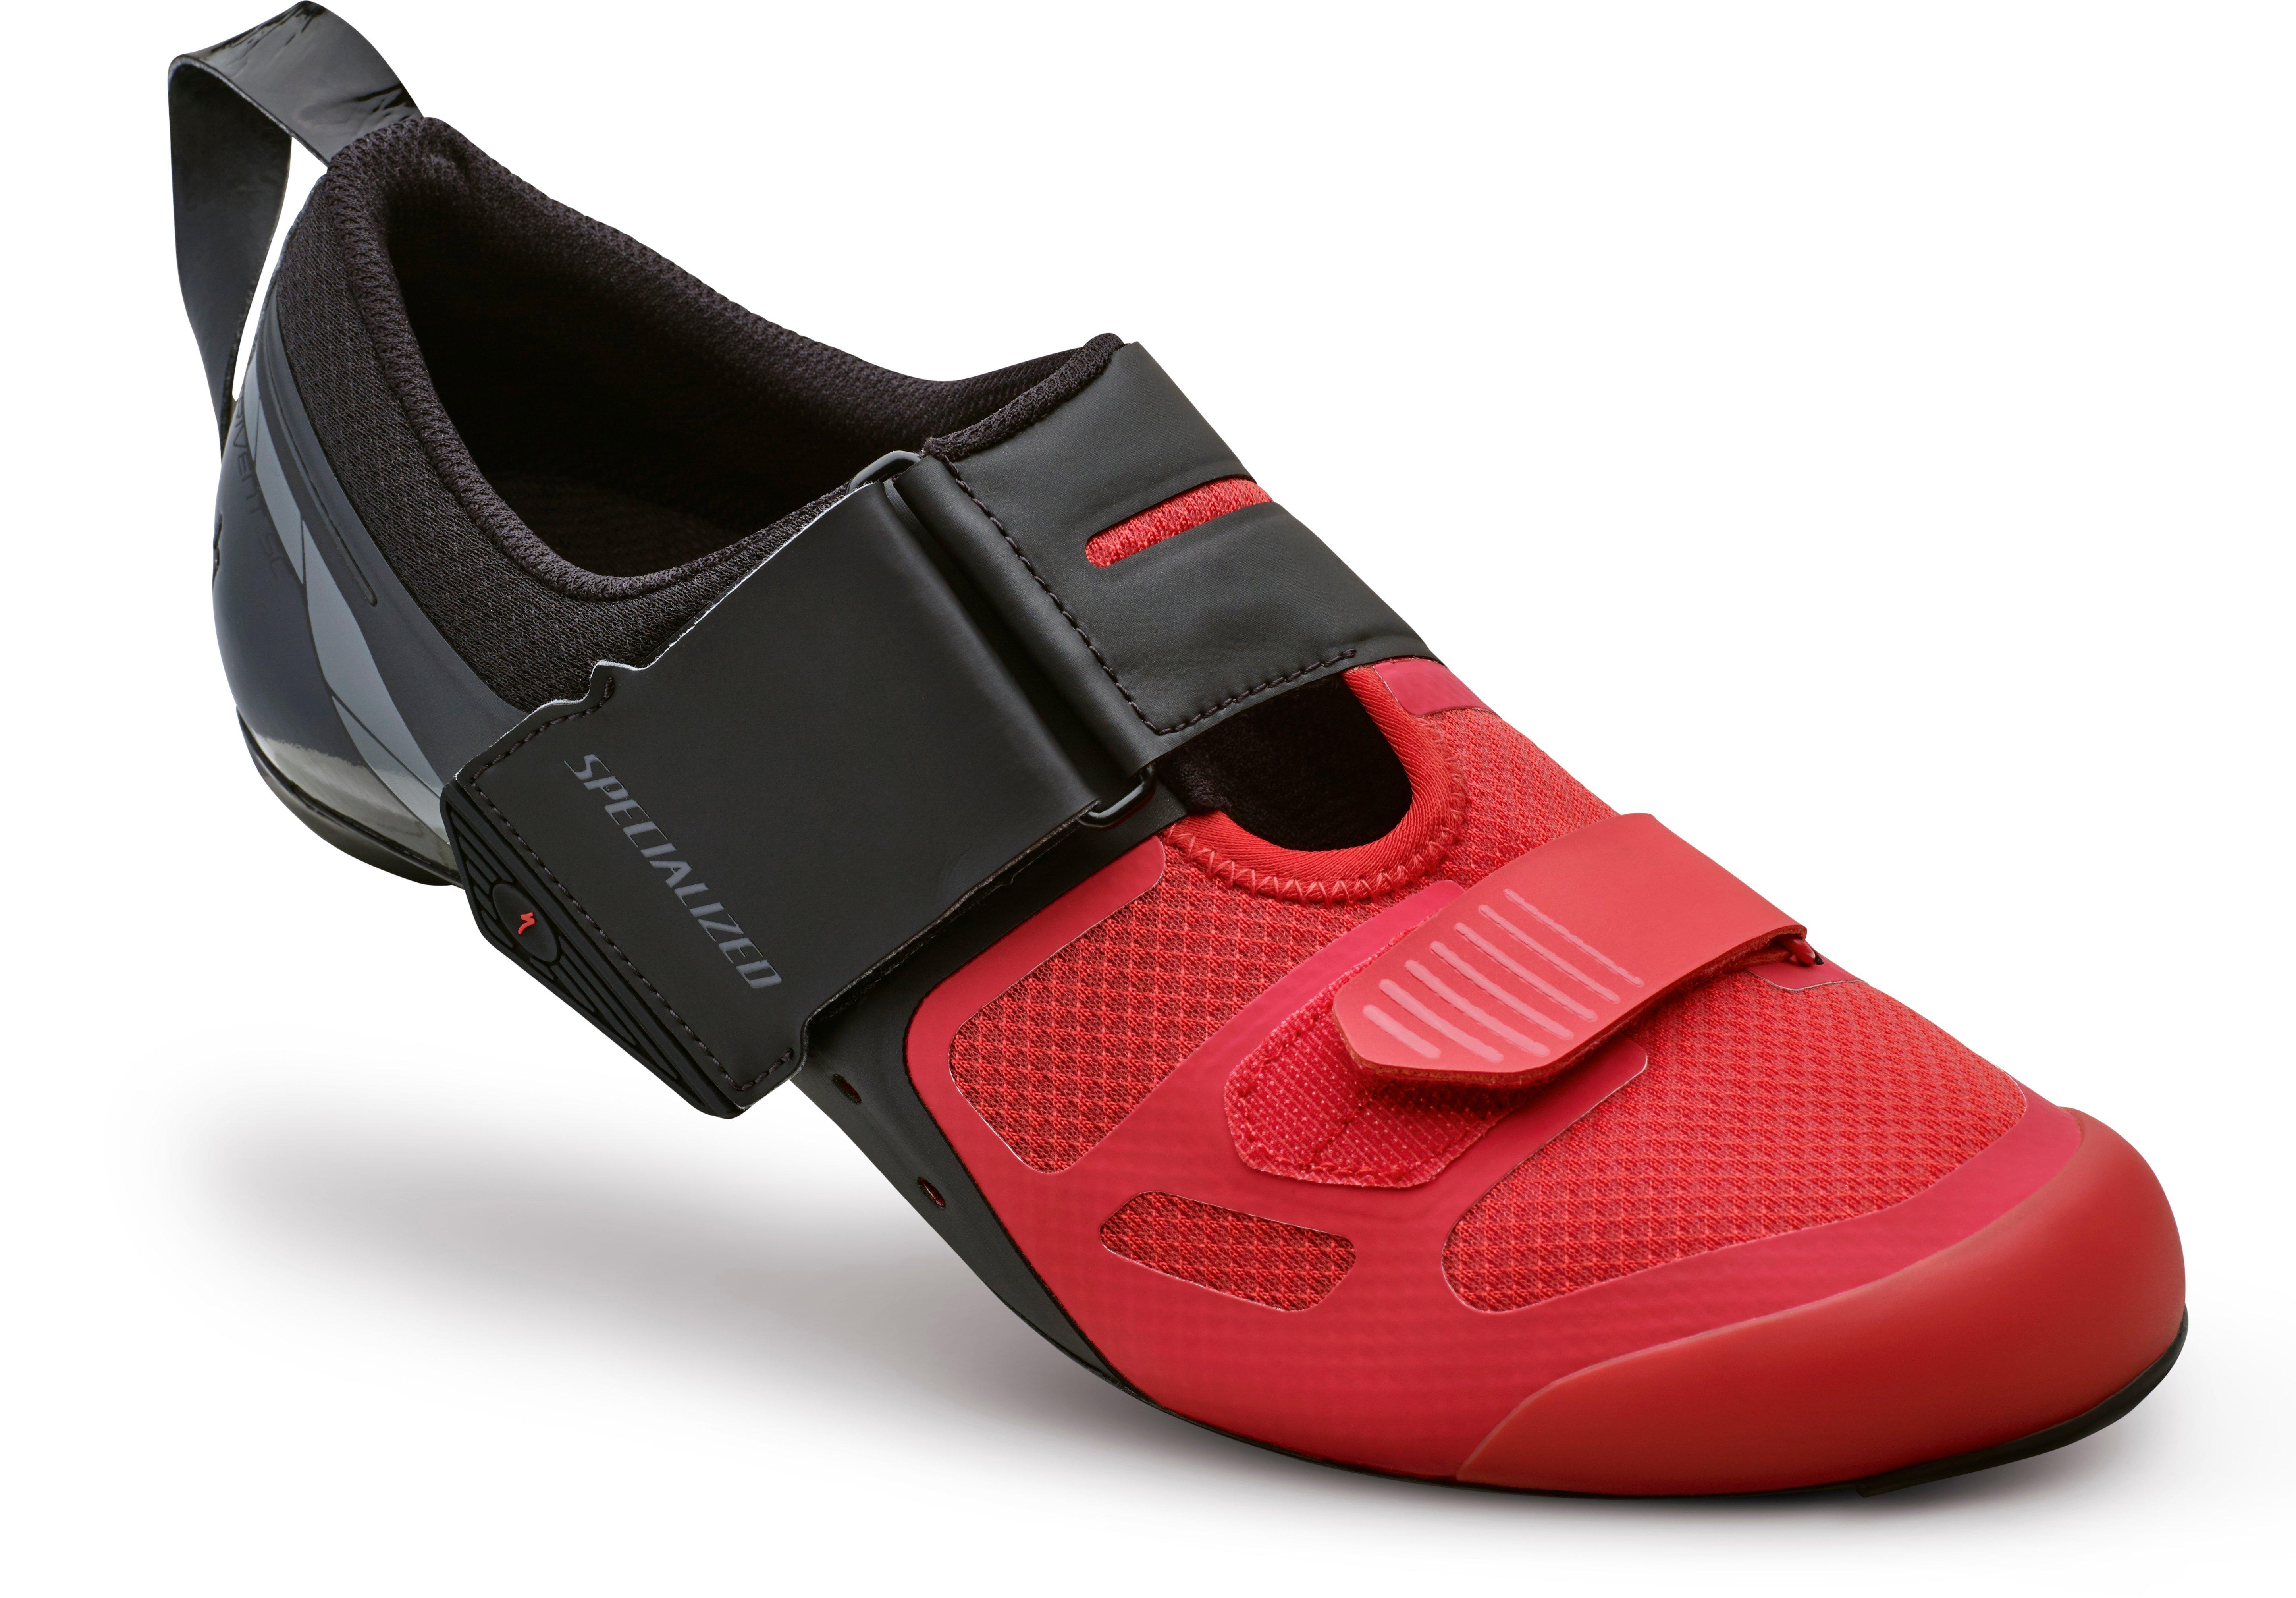 Trivent SC Triathlon Shoes | Specialized.com